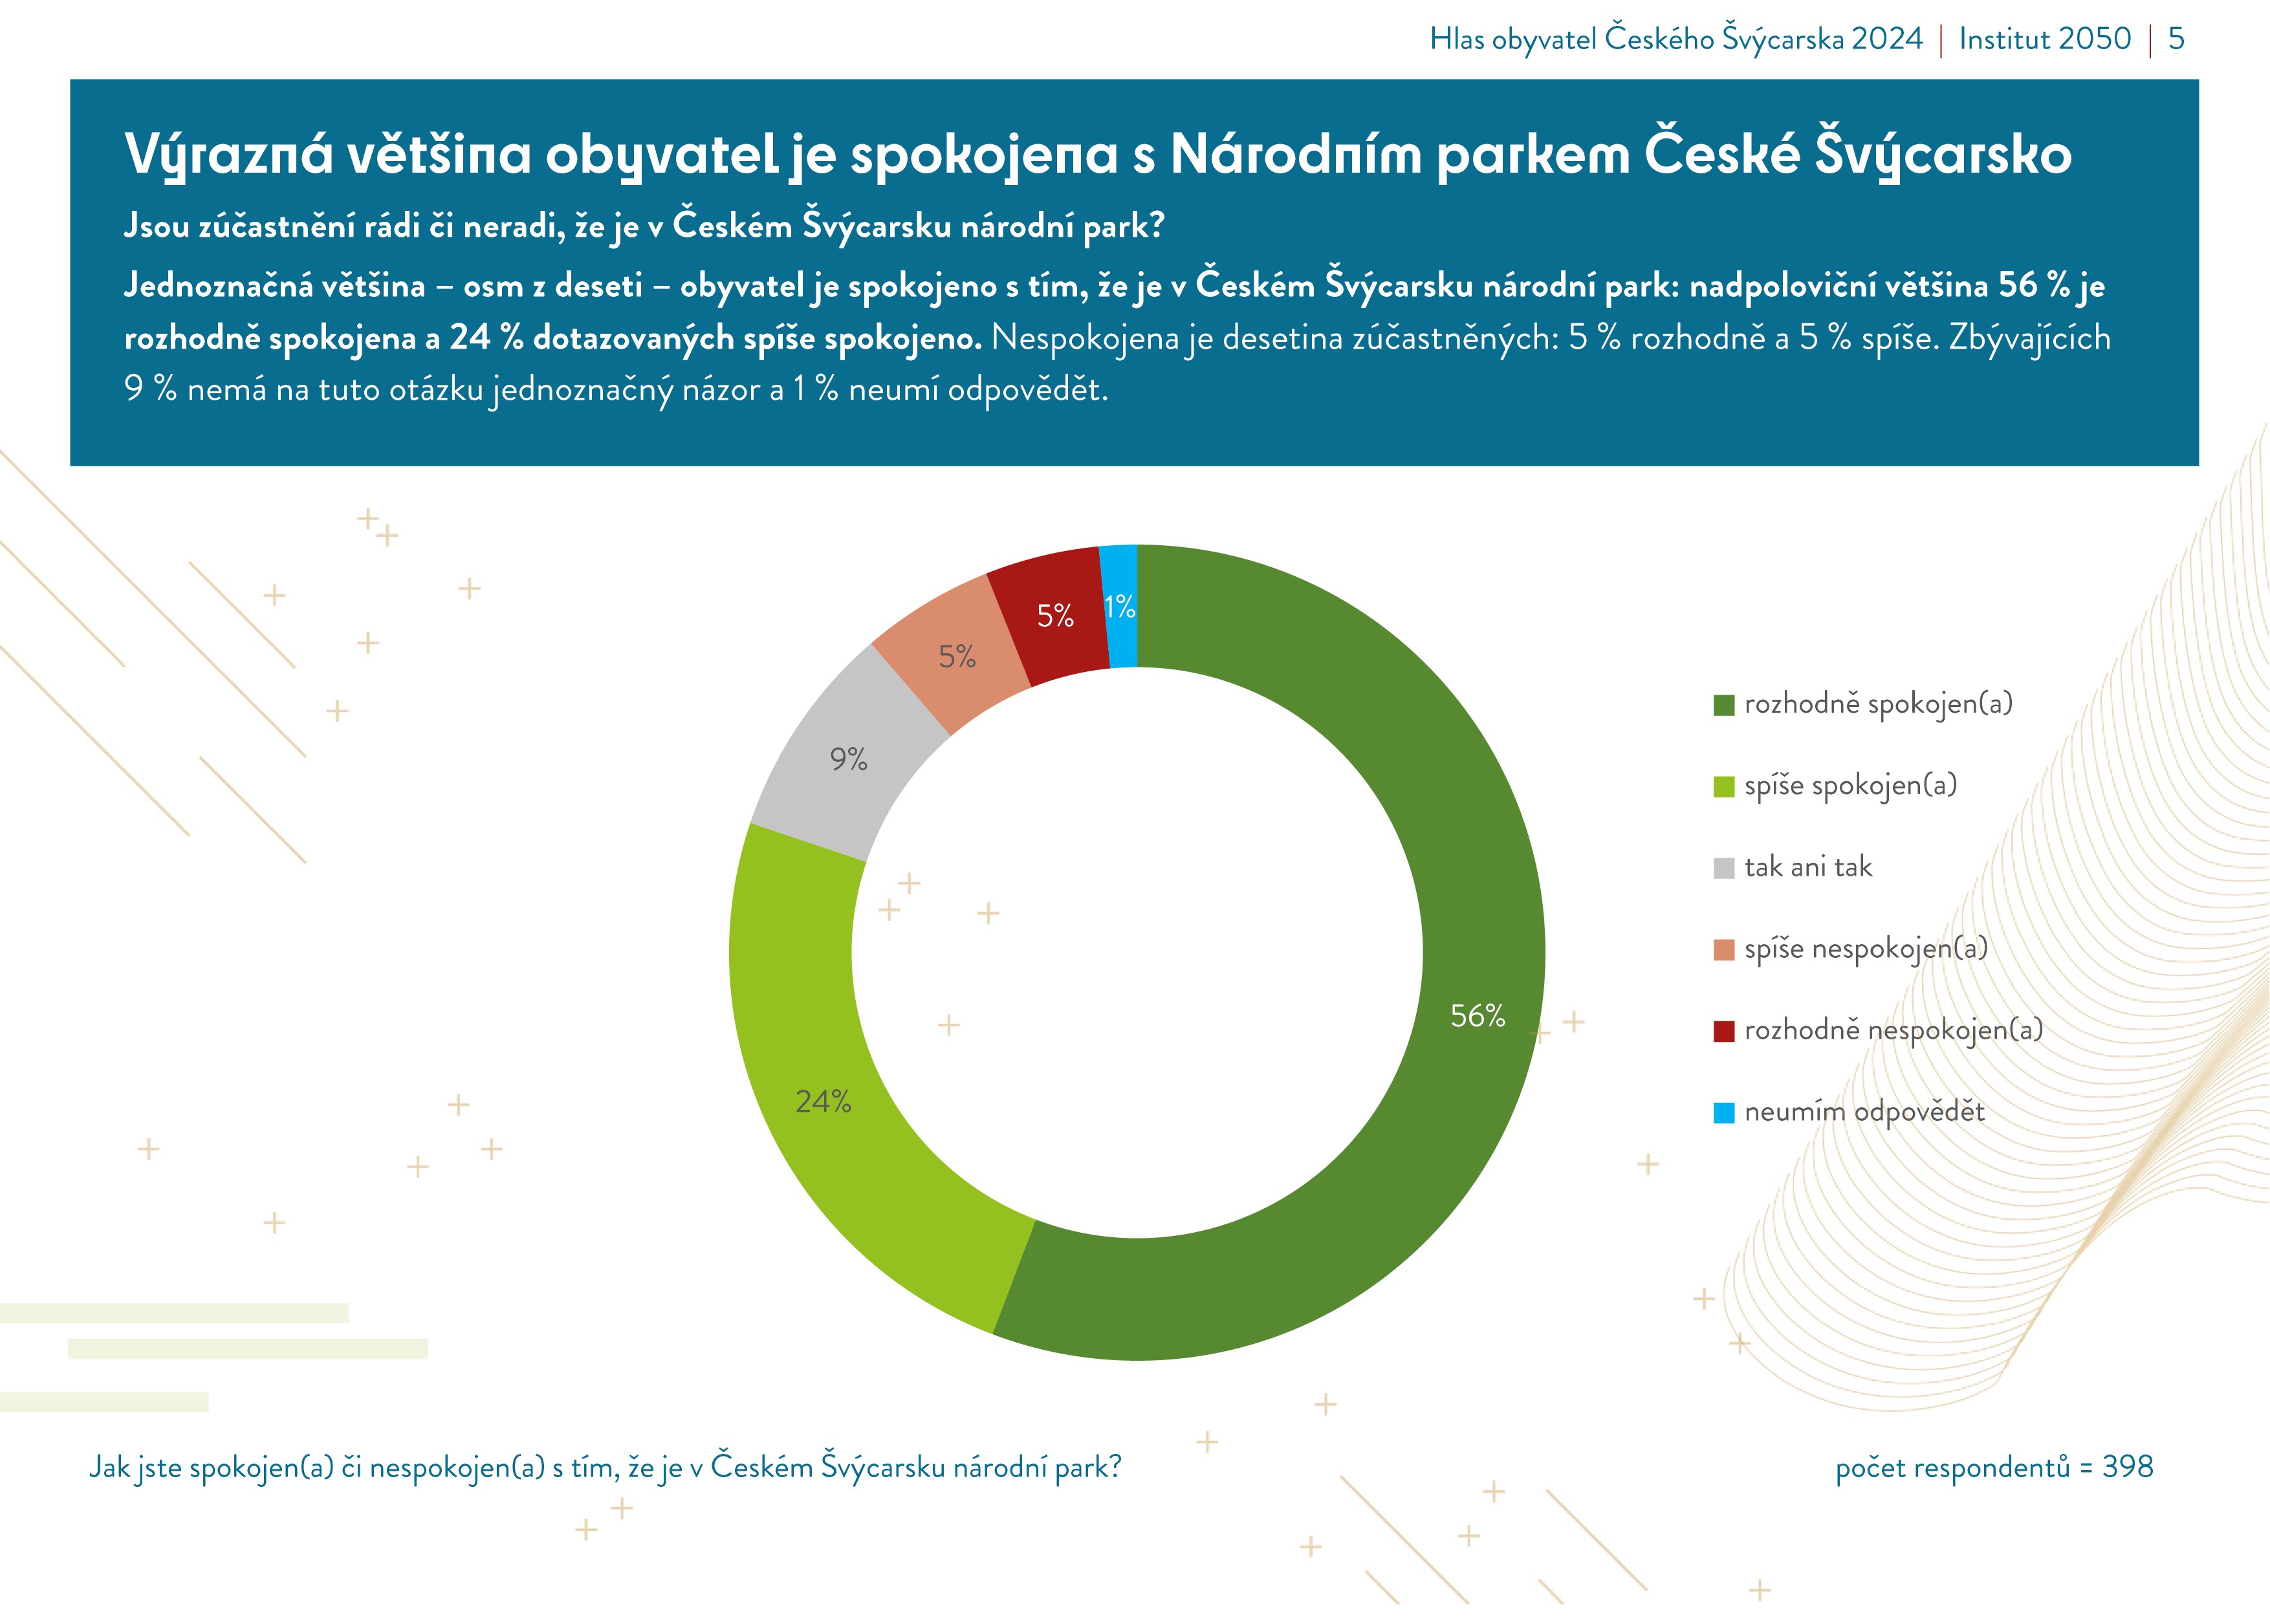 Graf znázorňující spokojenost místních obyvatel s NP České Švýcarsko